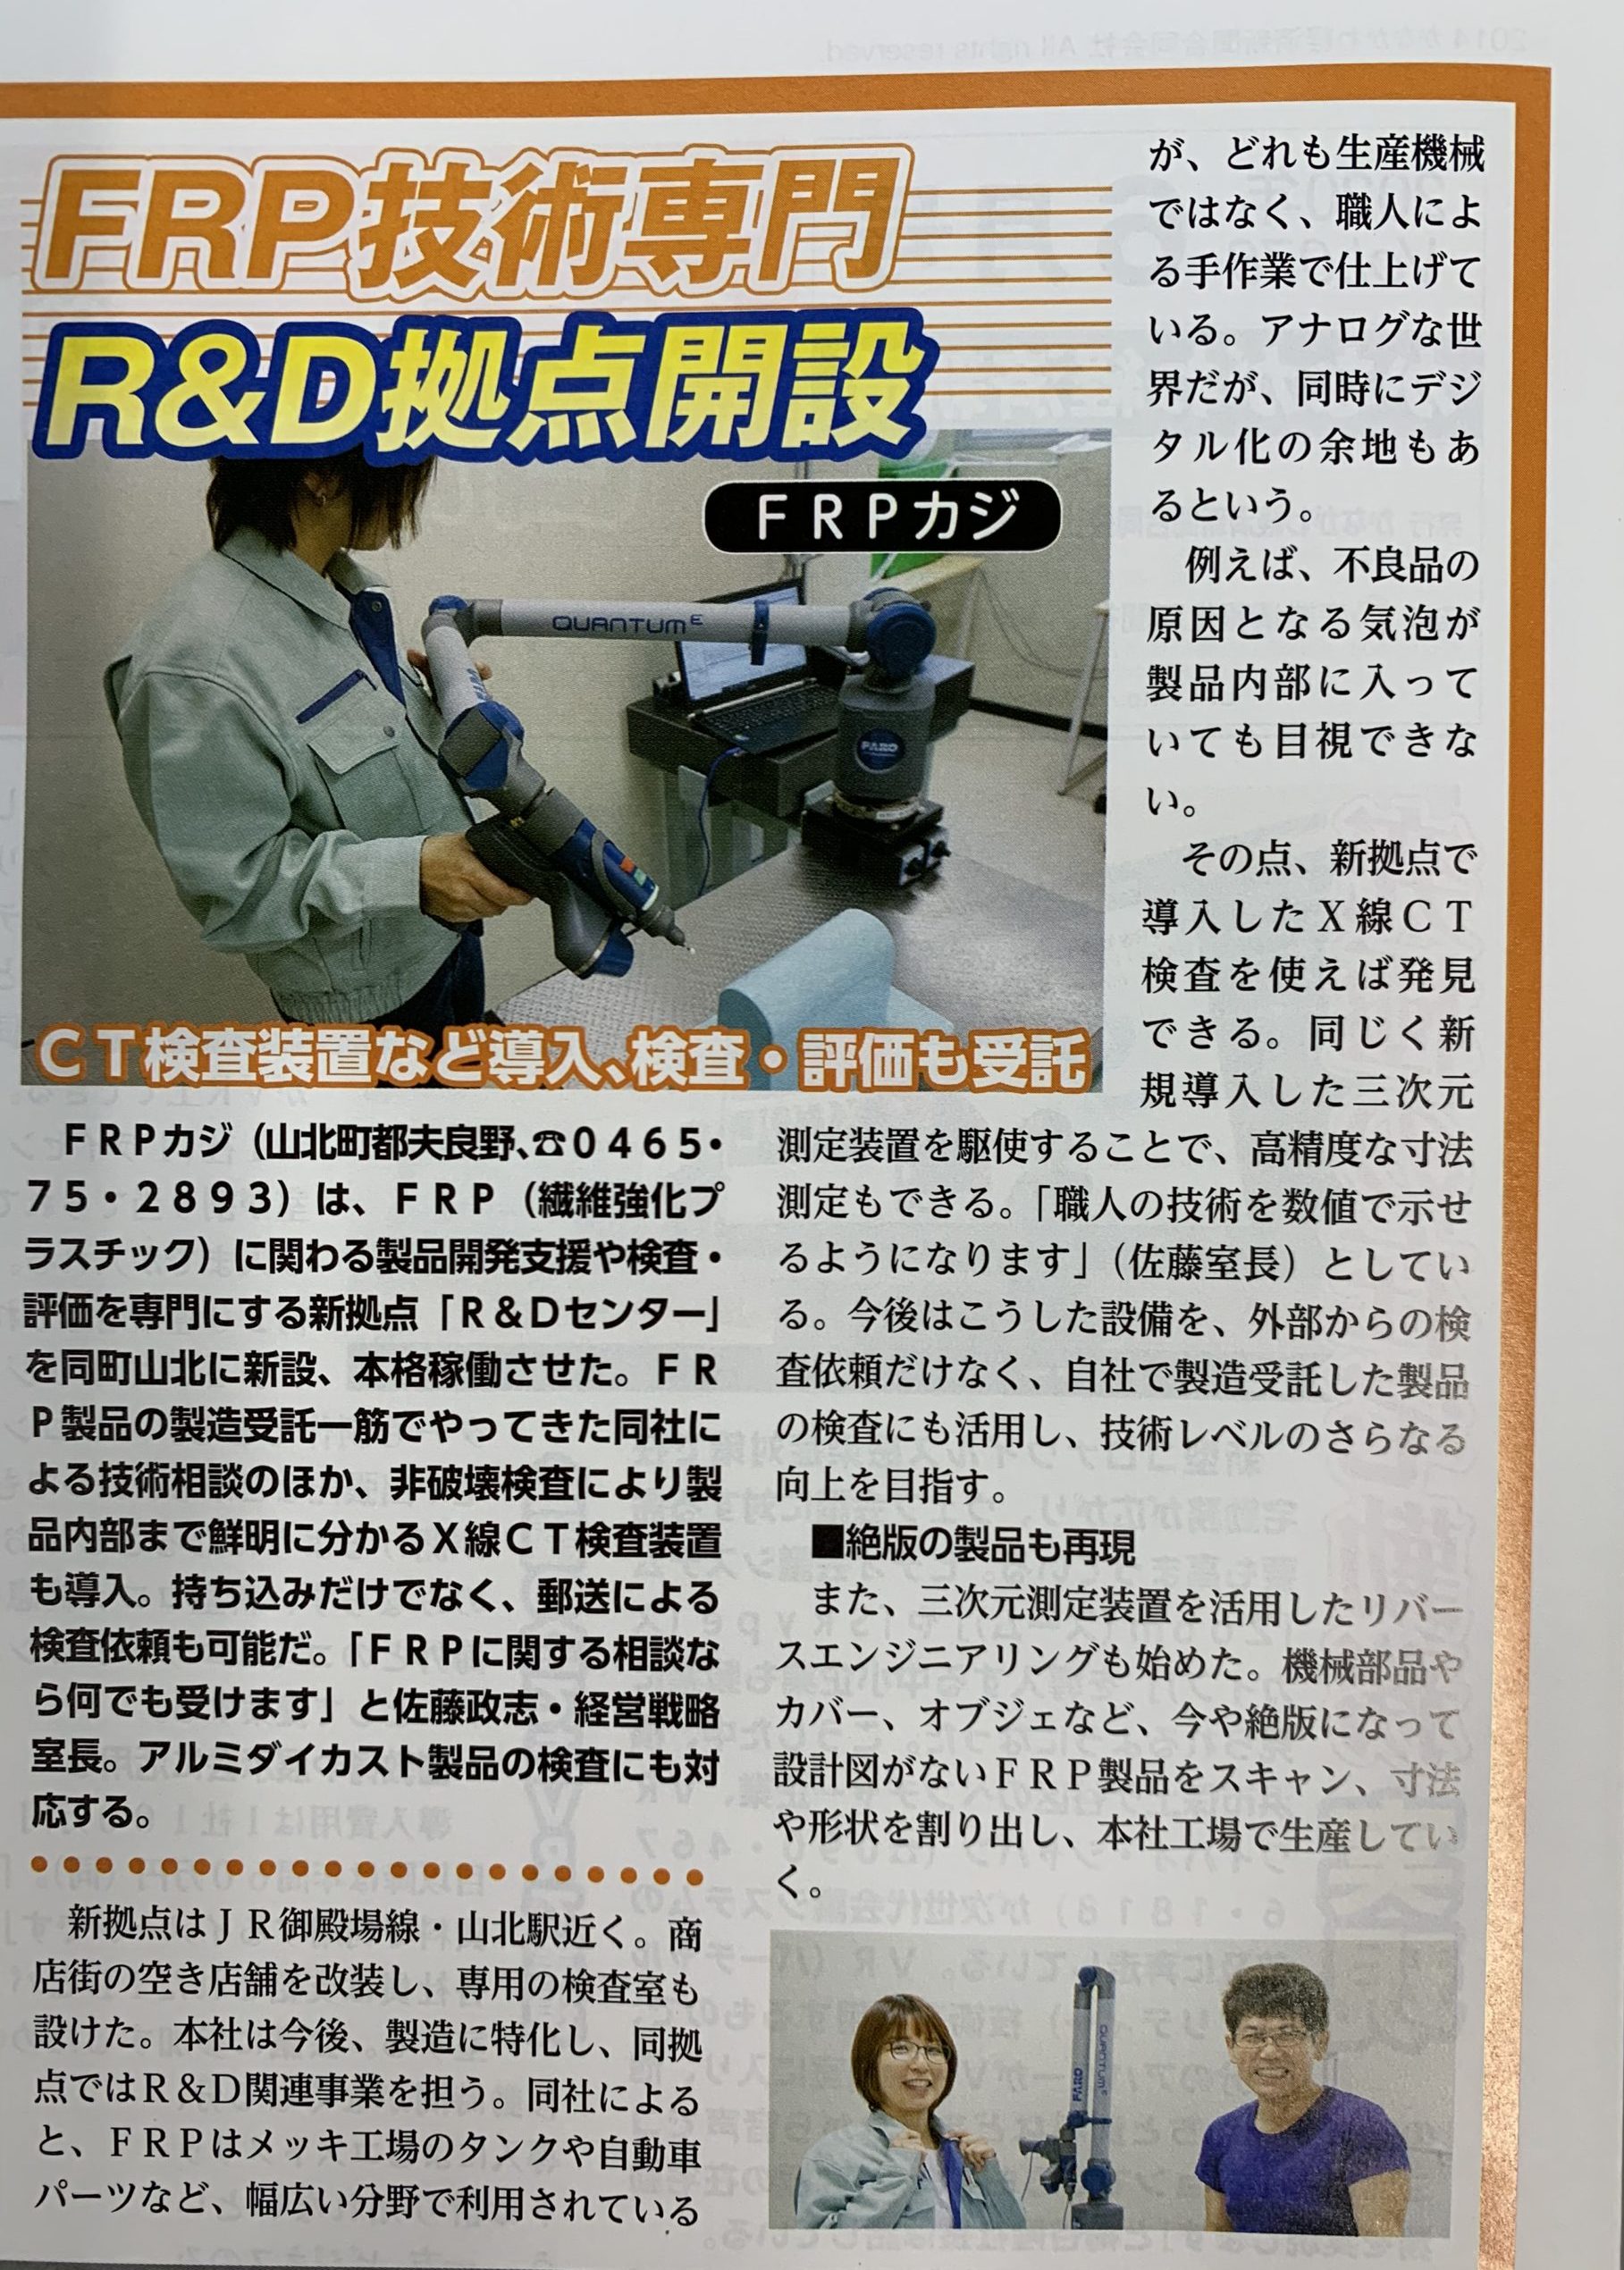 かながわ経済新聞にてR&Dセンター掲載